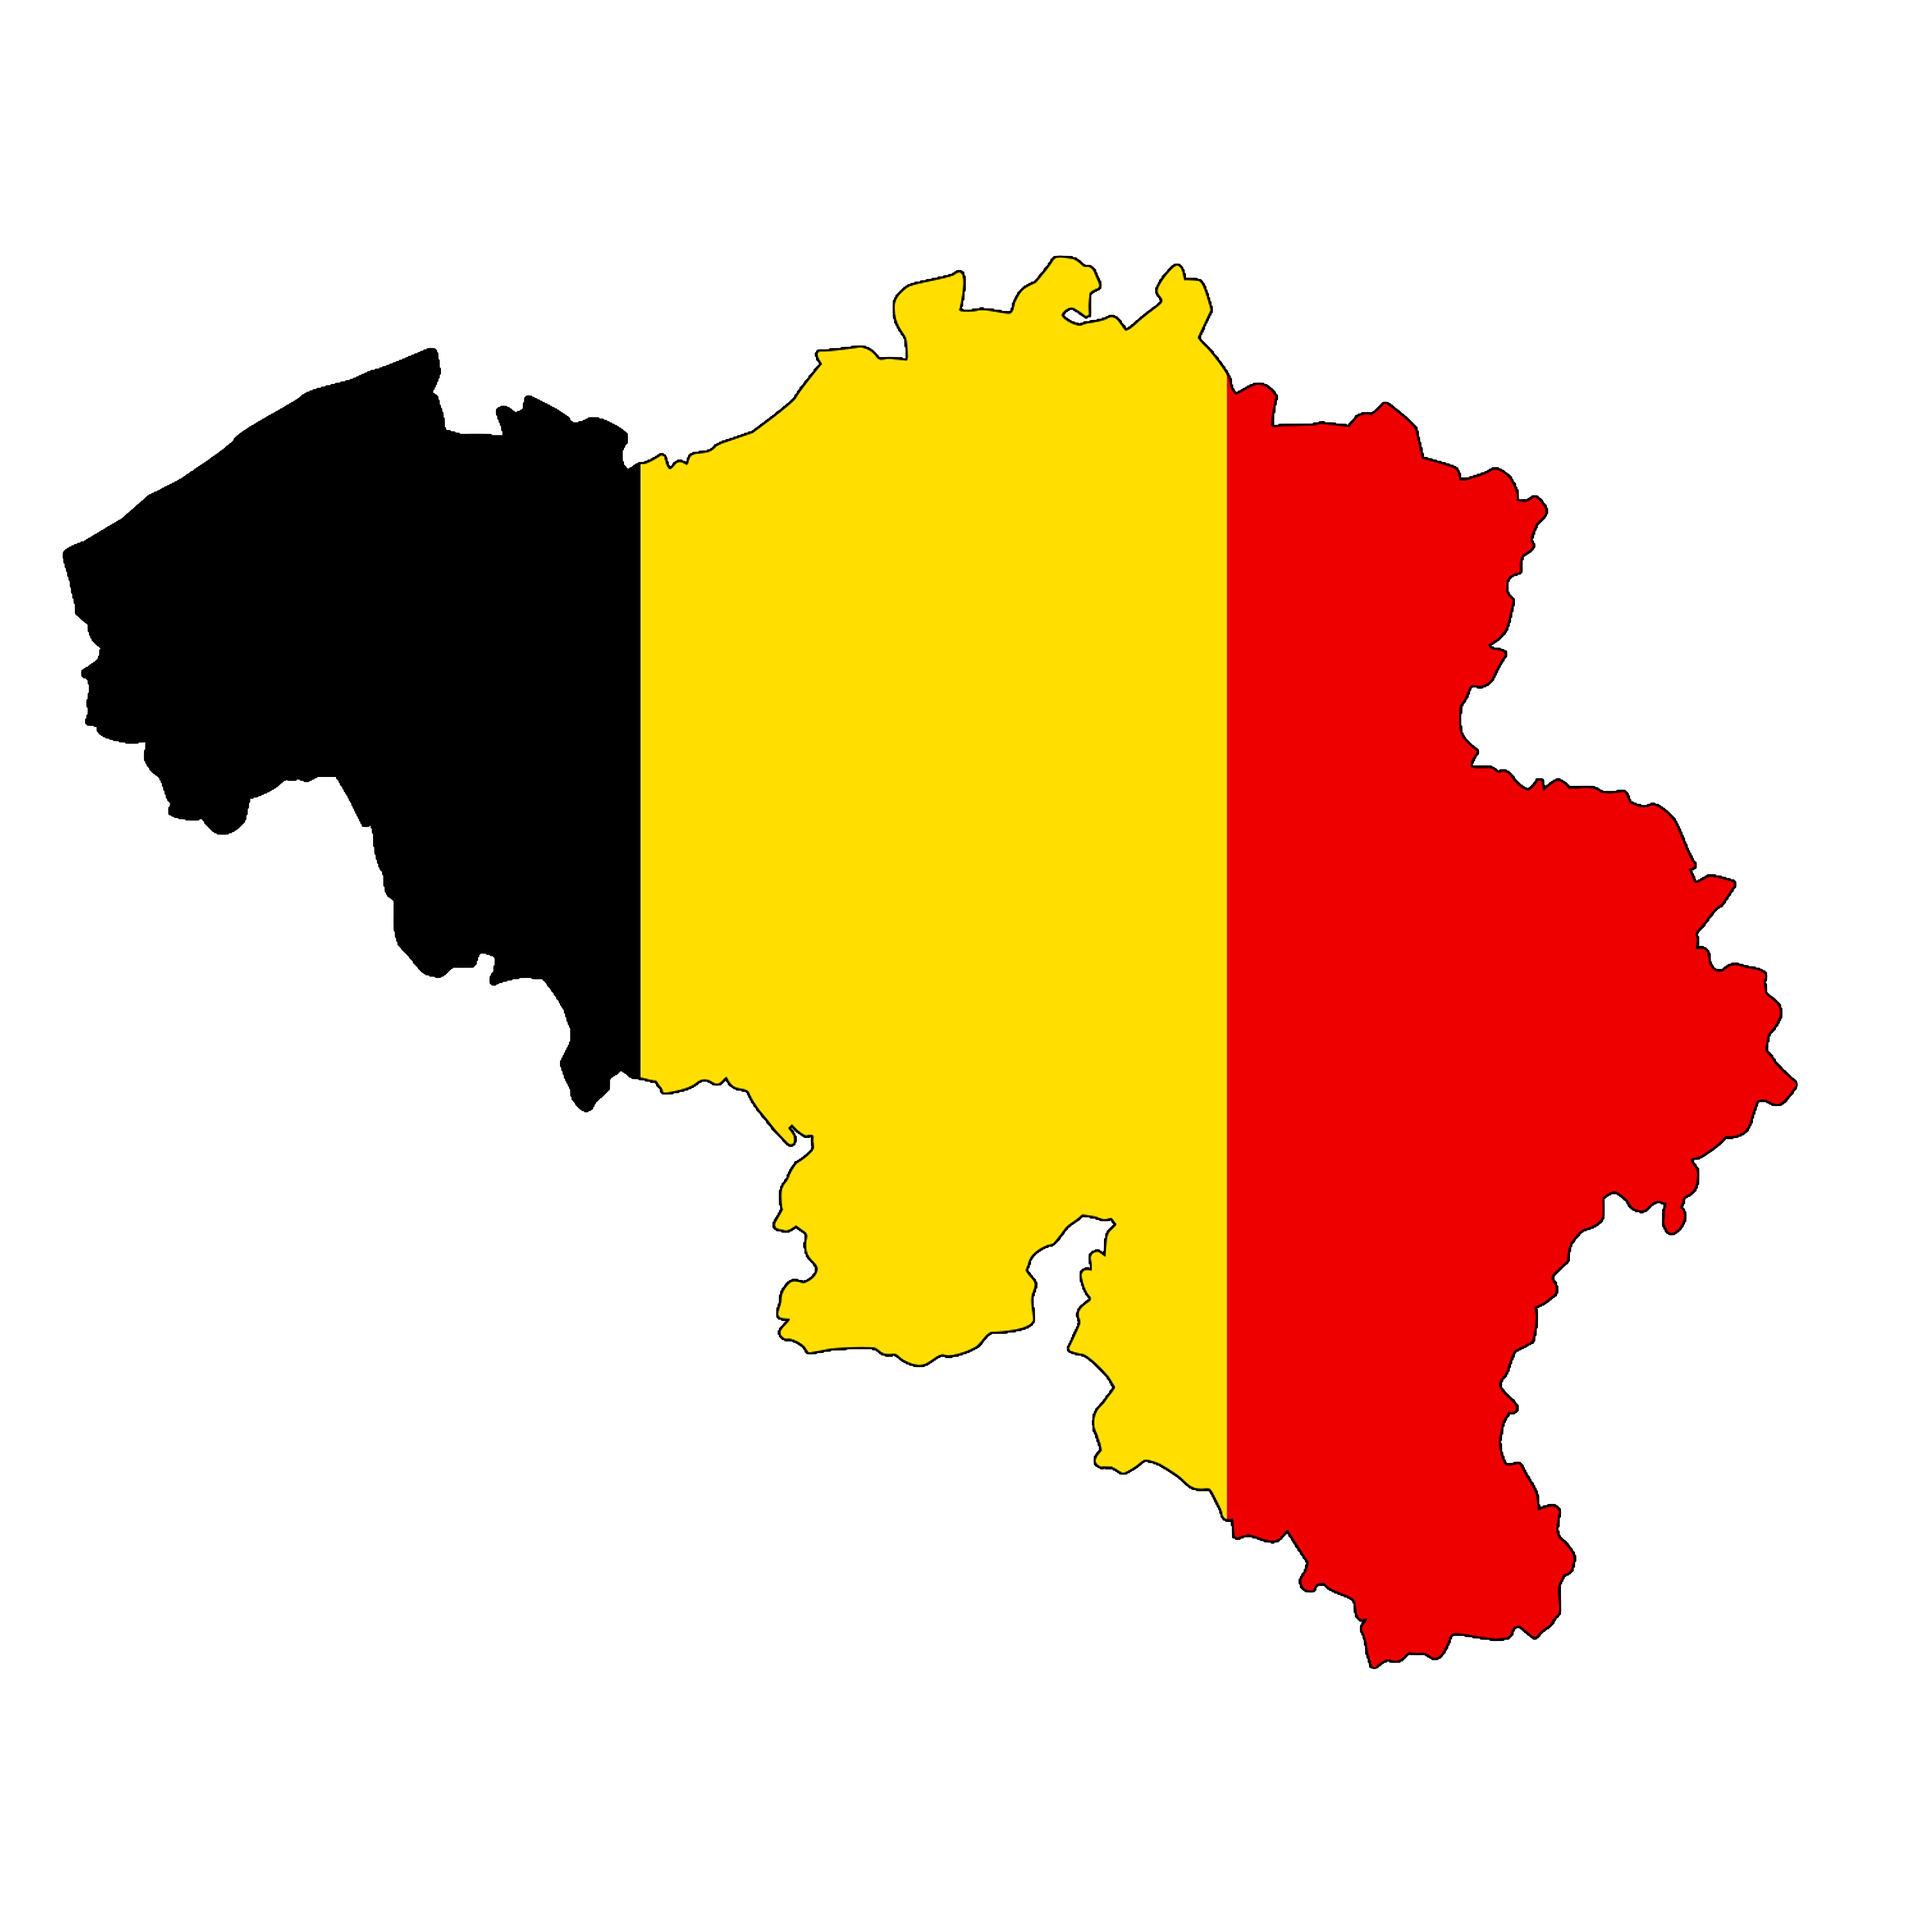 La question communautaire belge